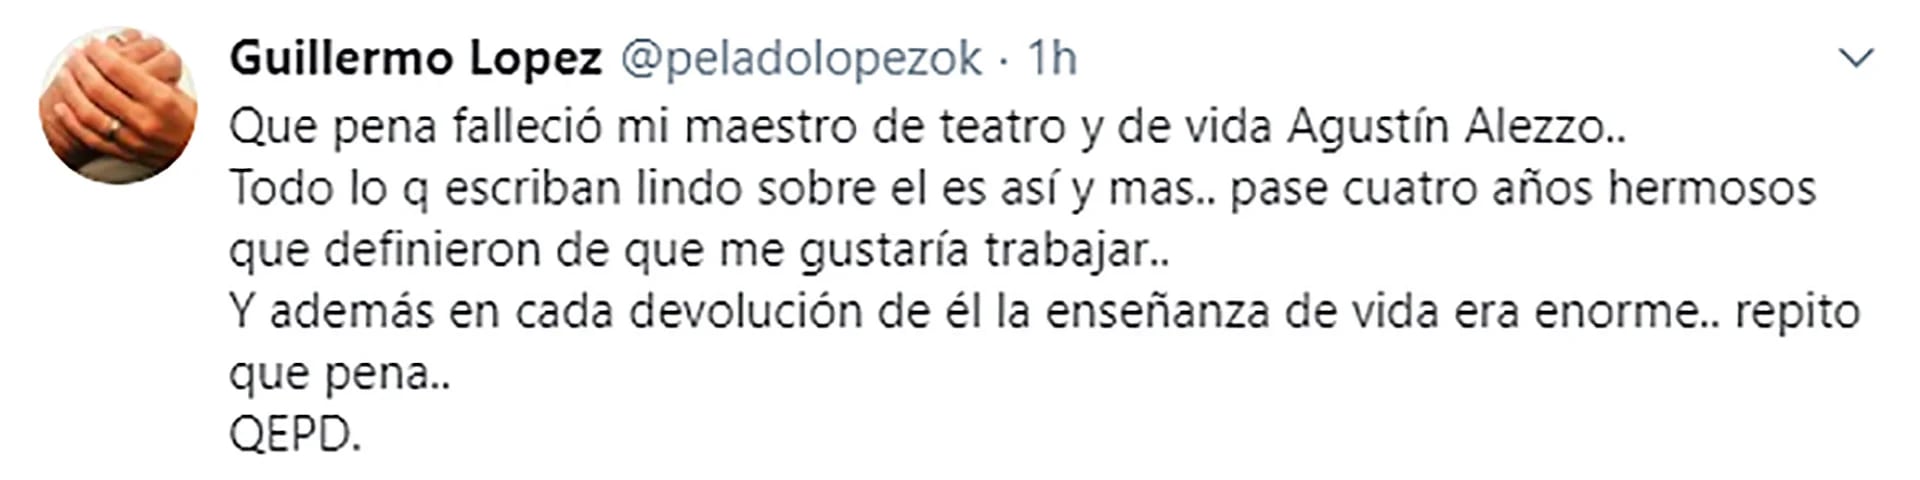 La despedida de Guillermo López